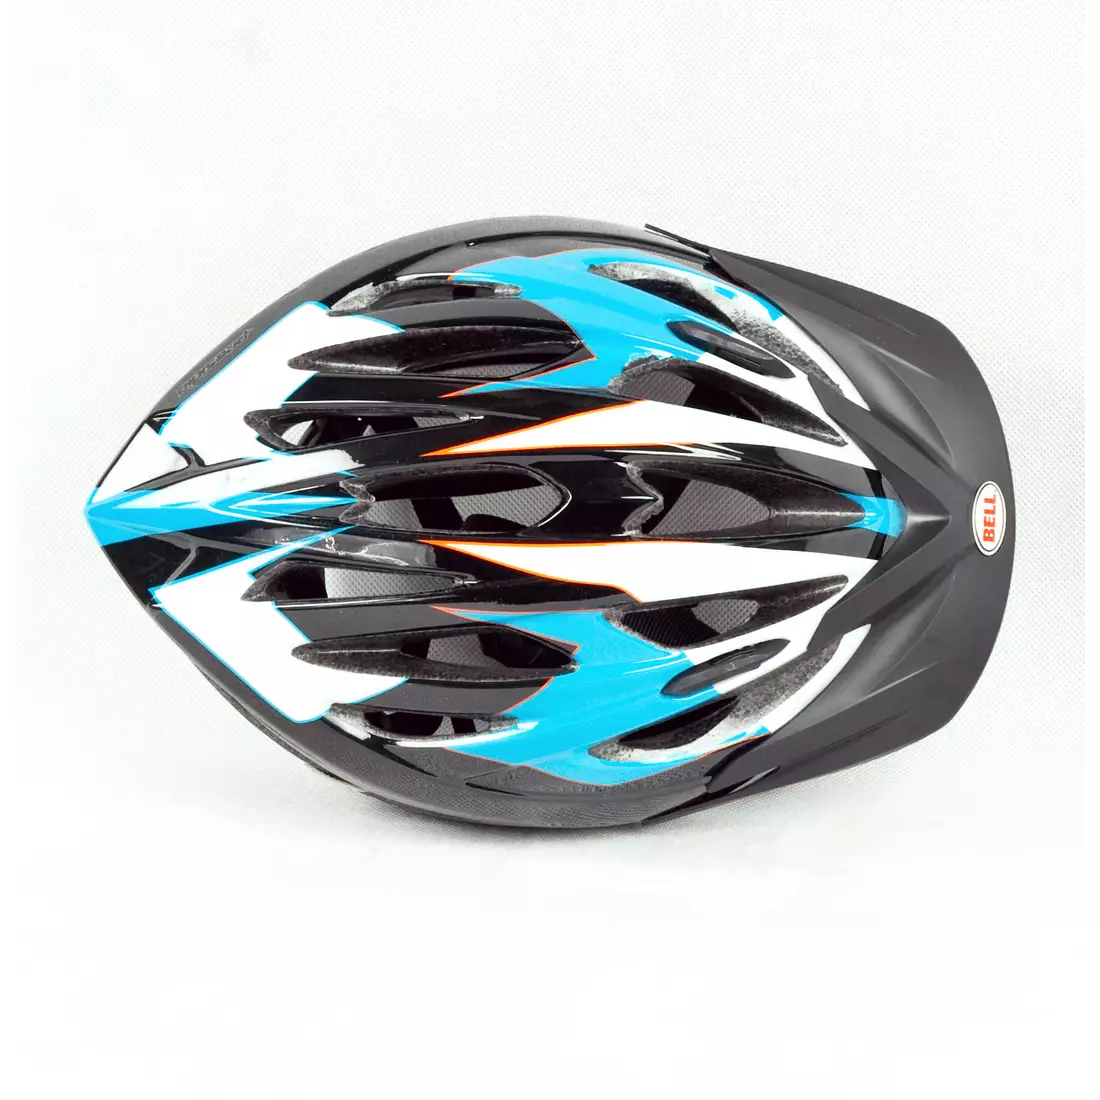 BELL PRESIDIO - casca de bicicleta, neagra si albastra